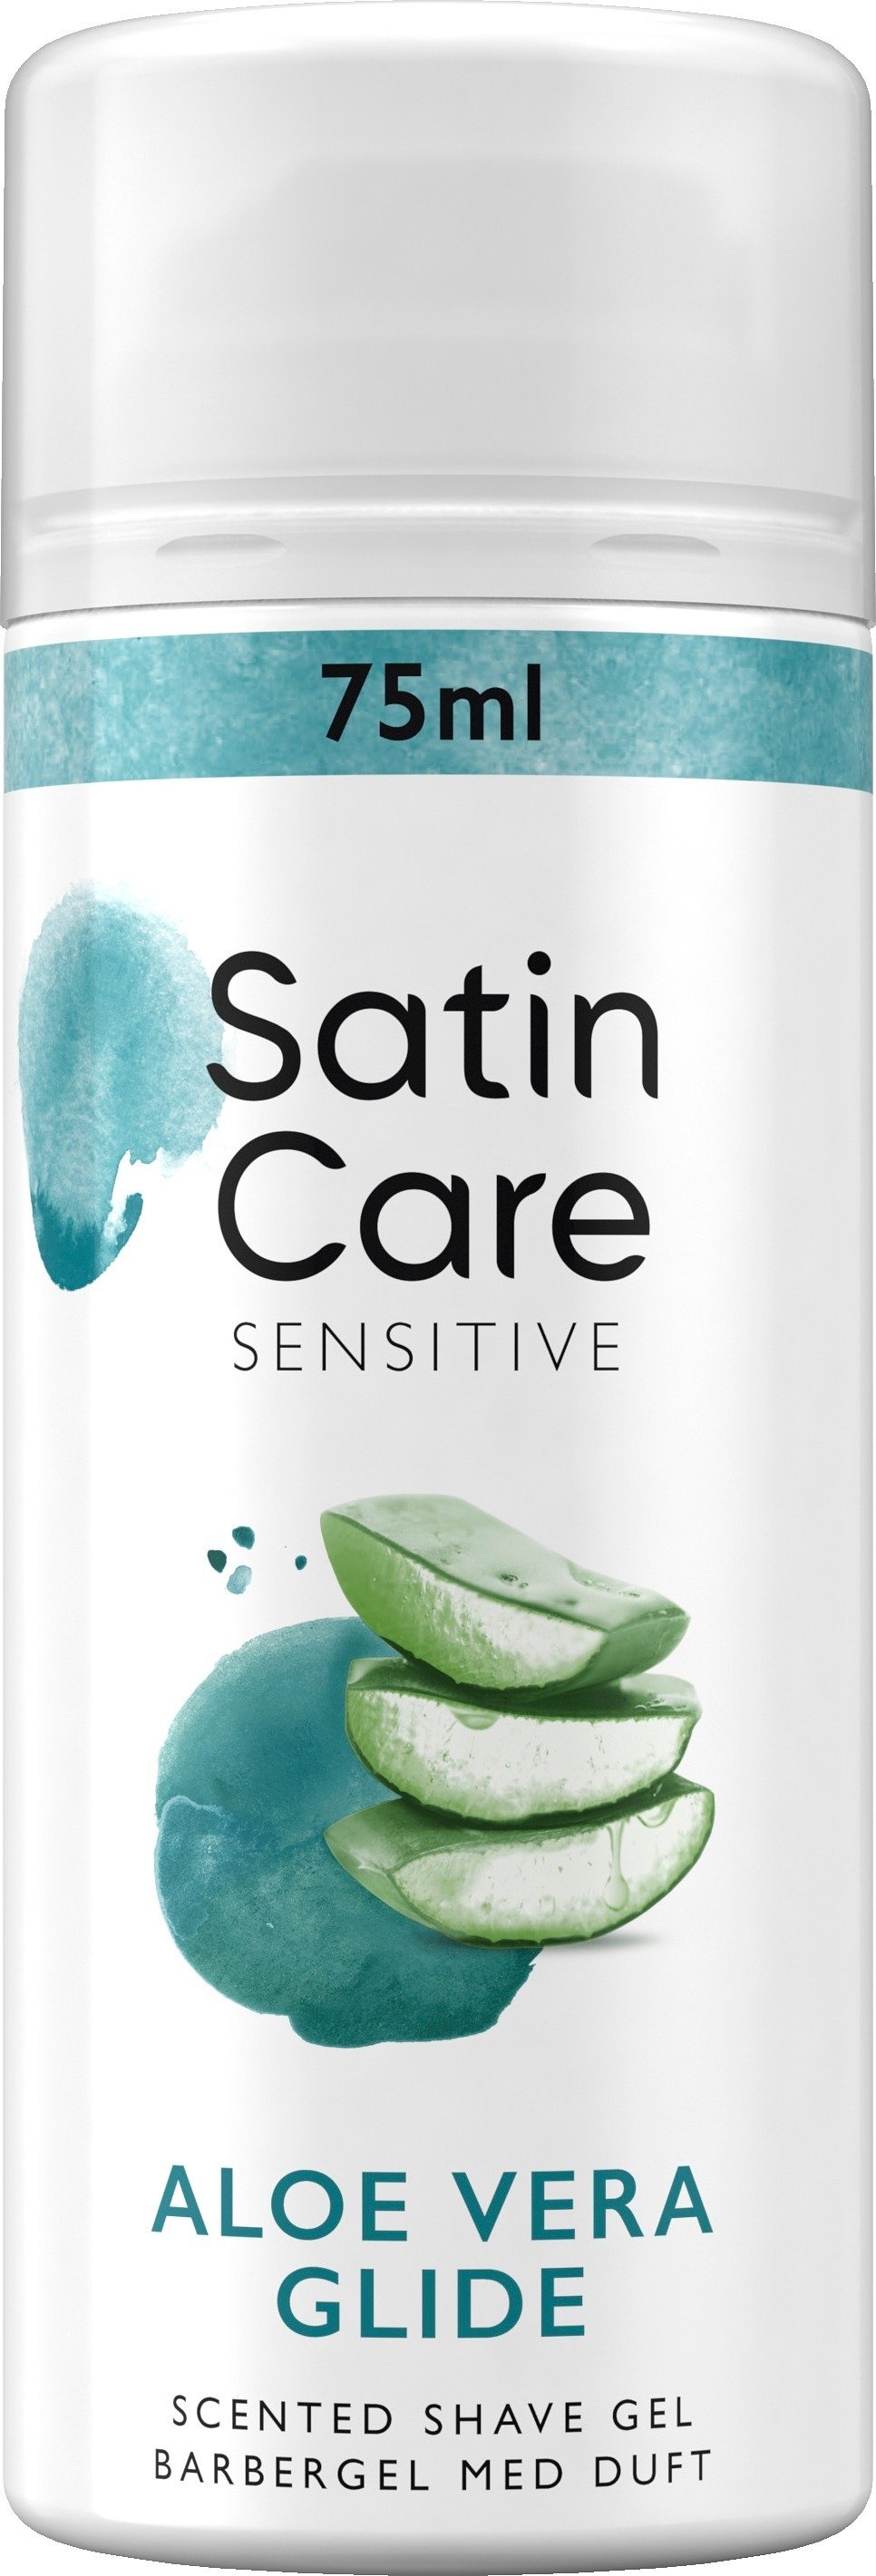 Gillette Venus Satin Care Sensitive Aloe Vera Glide 75 ml